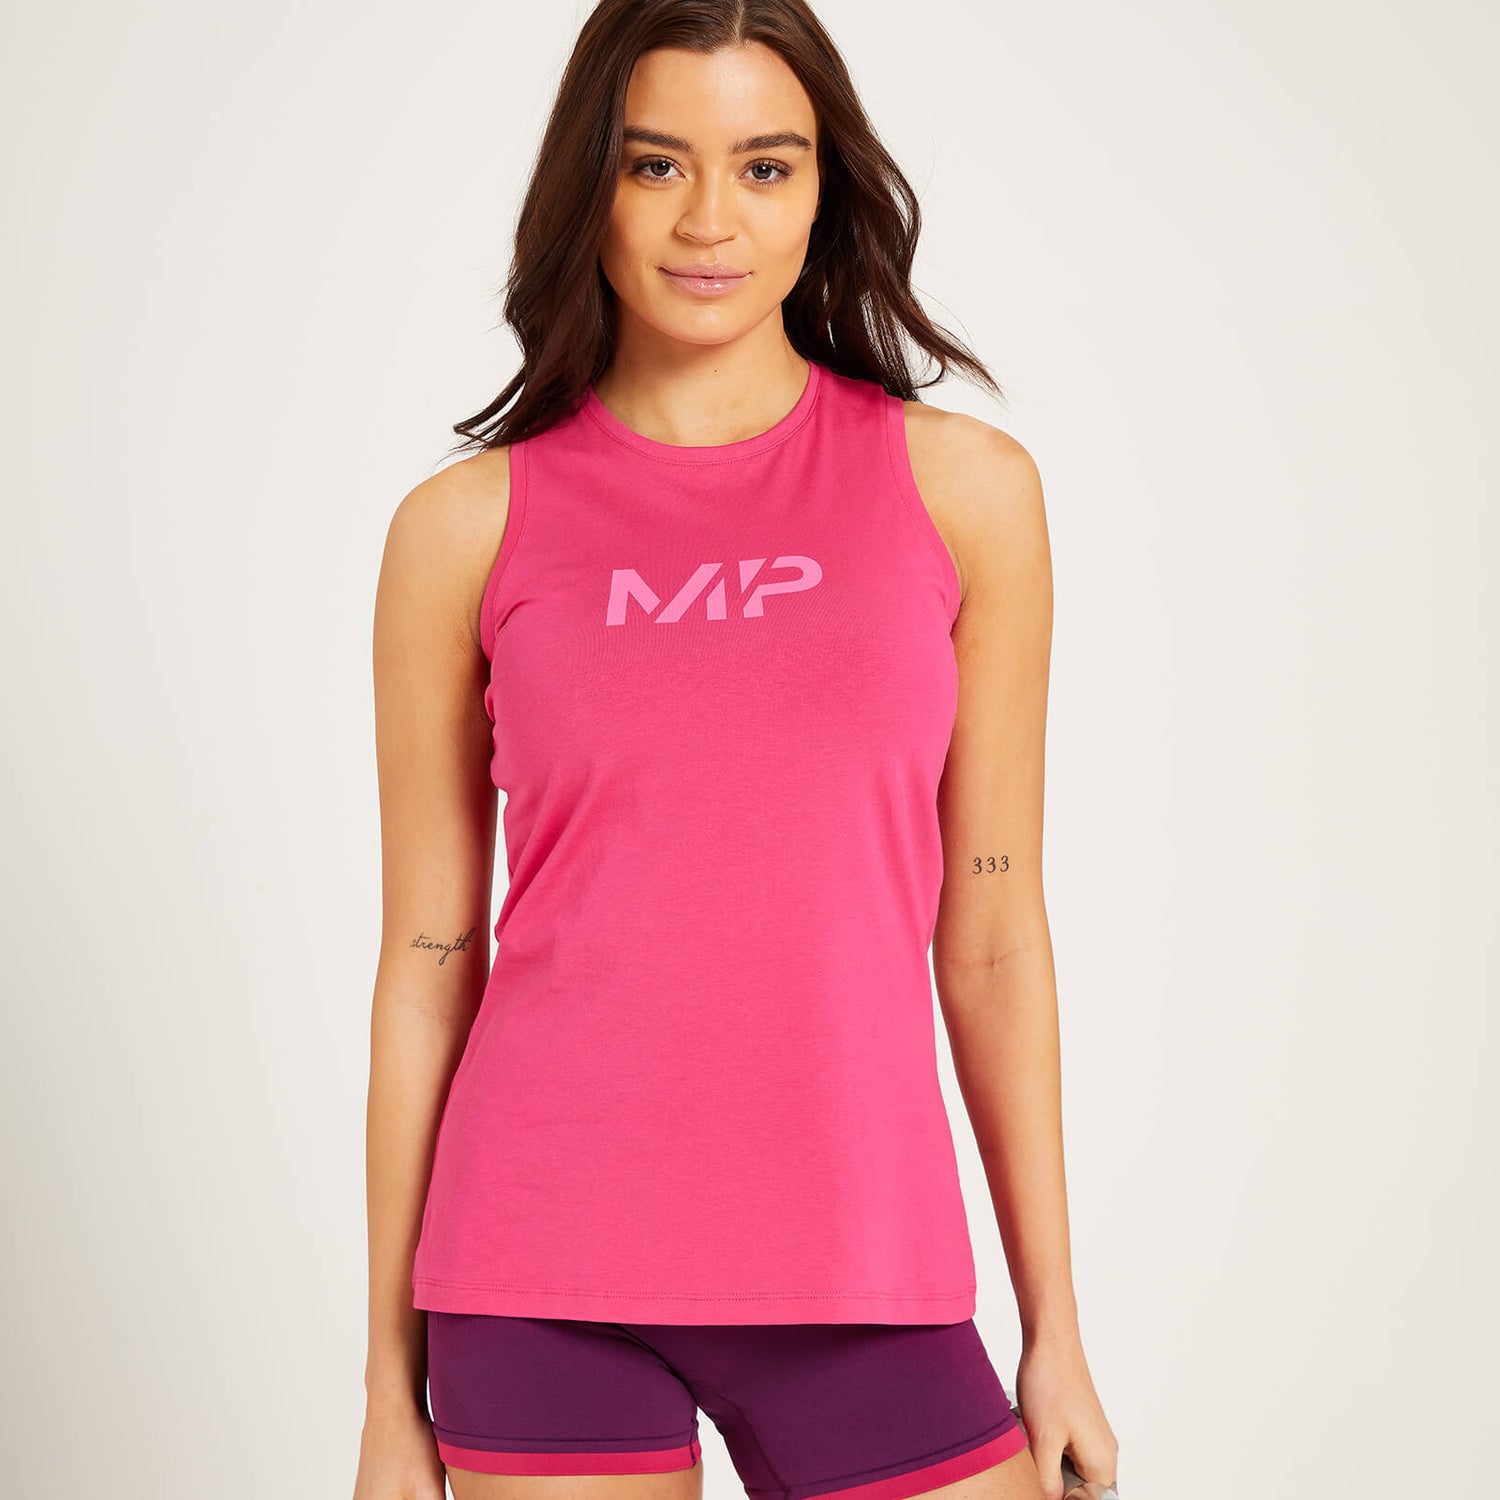 Camiseta sin mangas con espalda nadadora Adapt para mujer de MP - Magenta - XXS